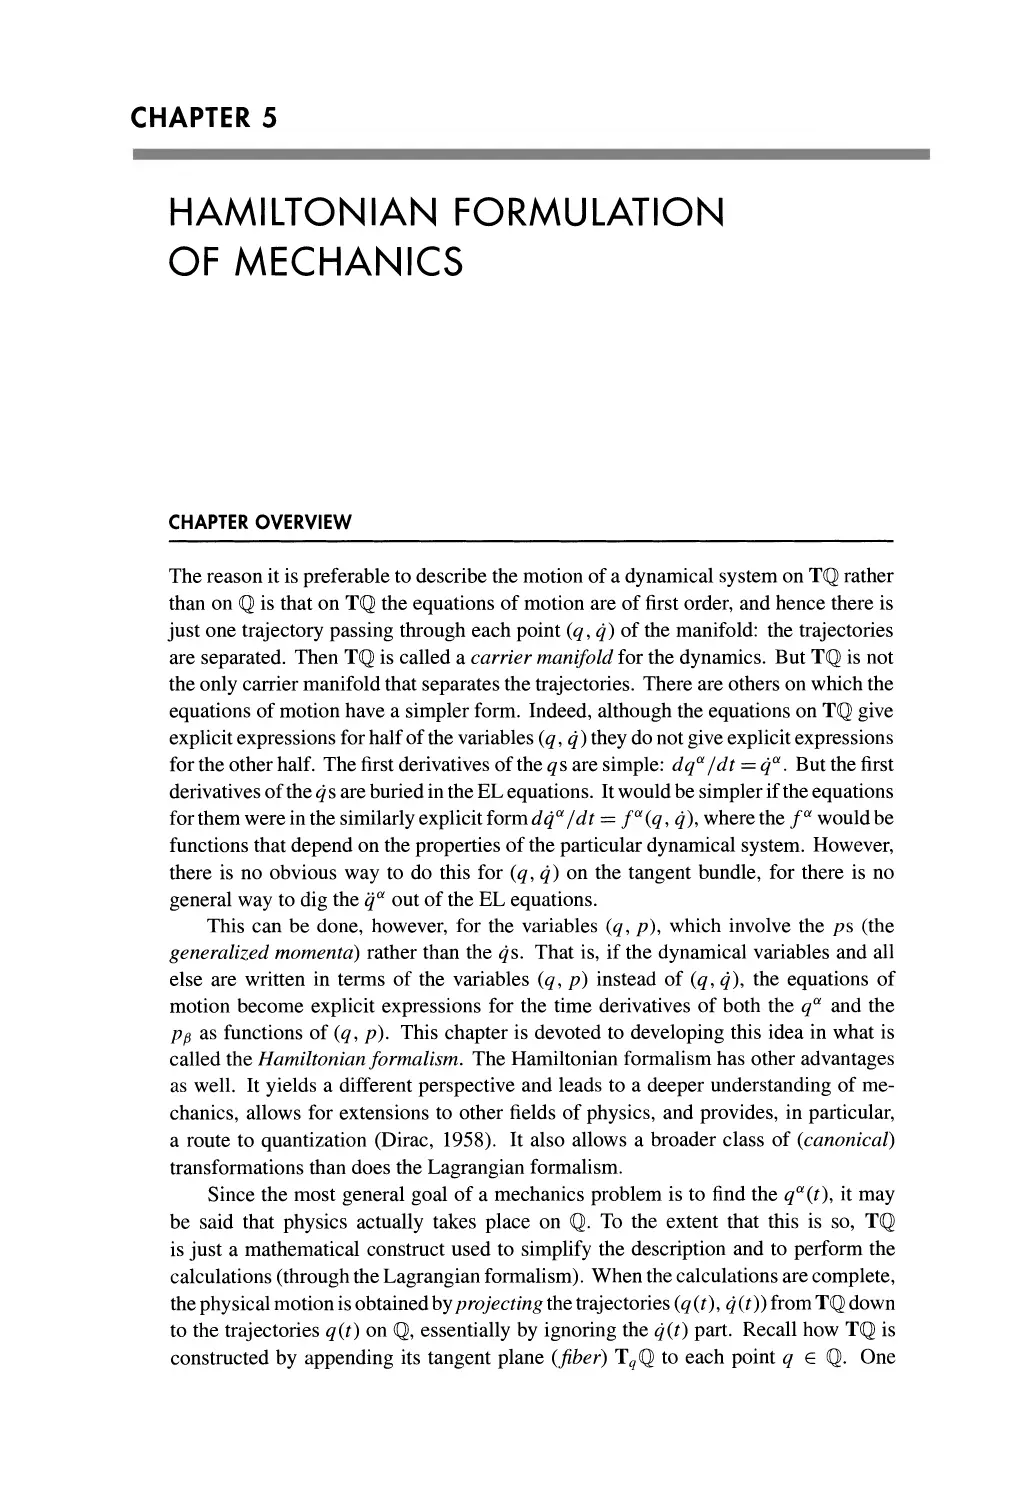 5 Hamiltonian Formulation of Mechanics